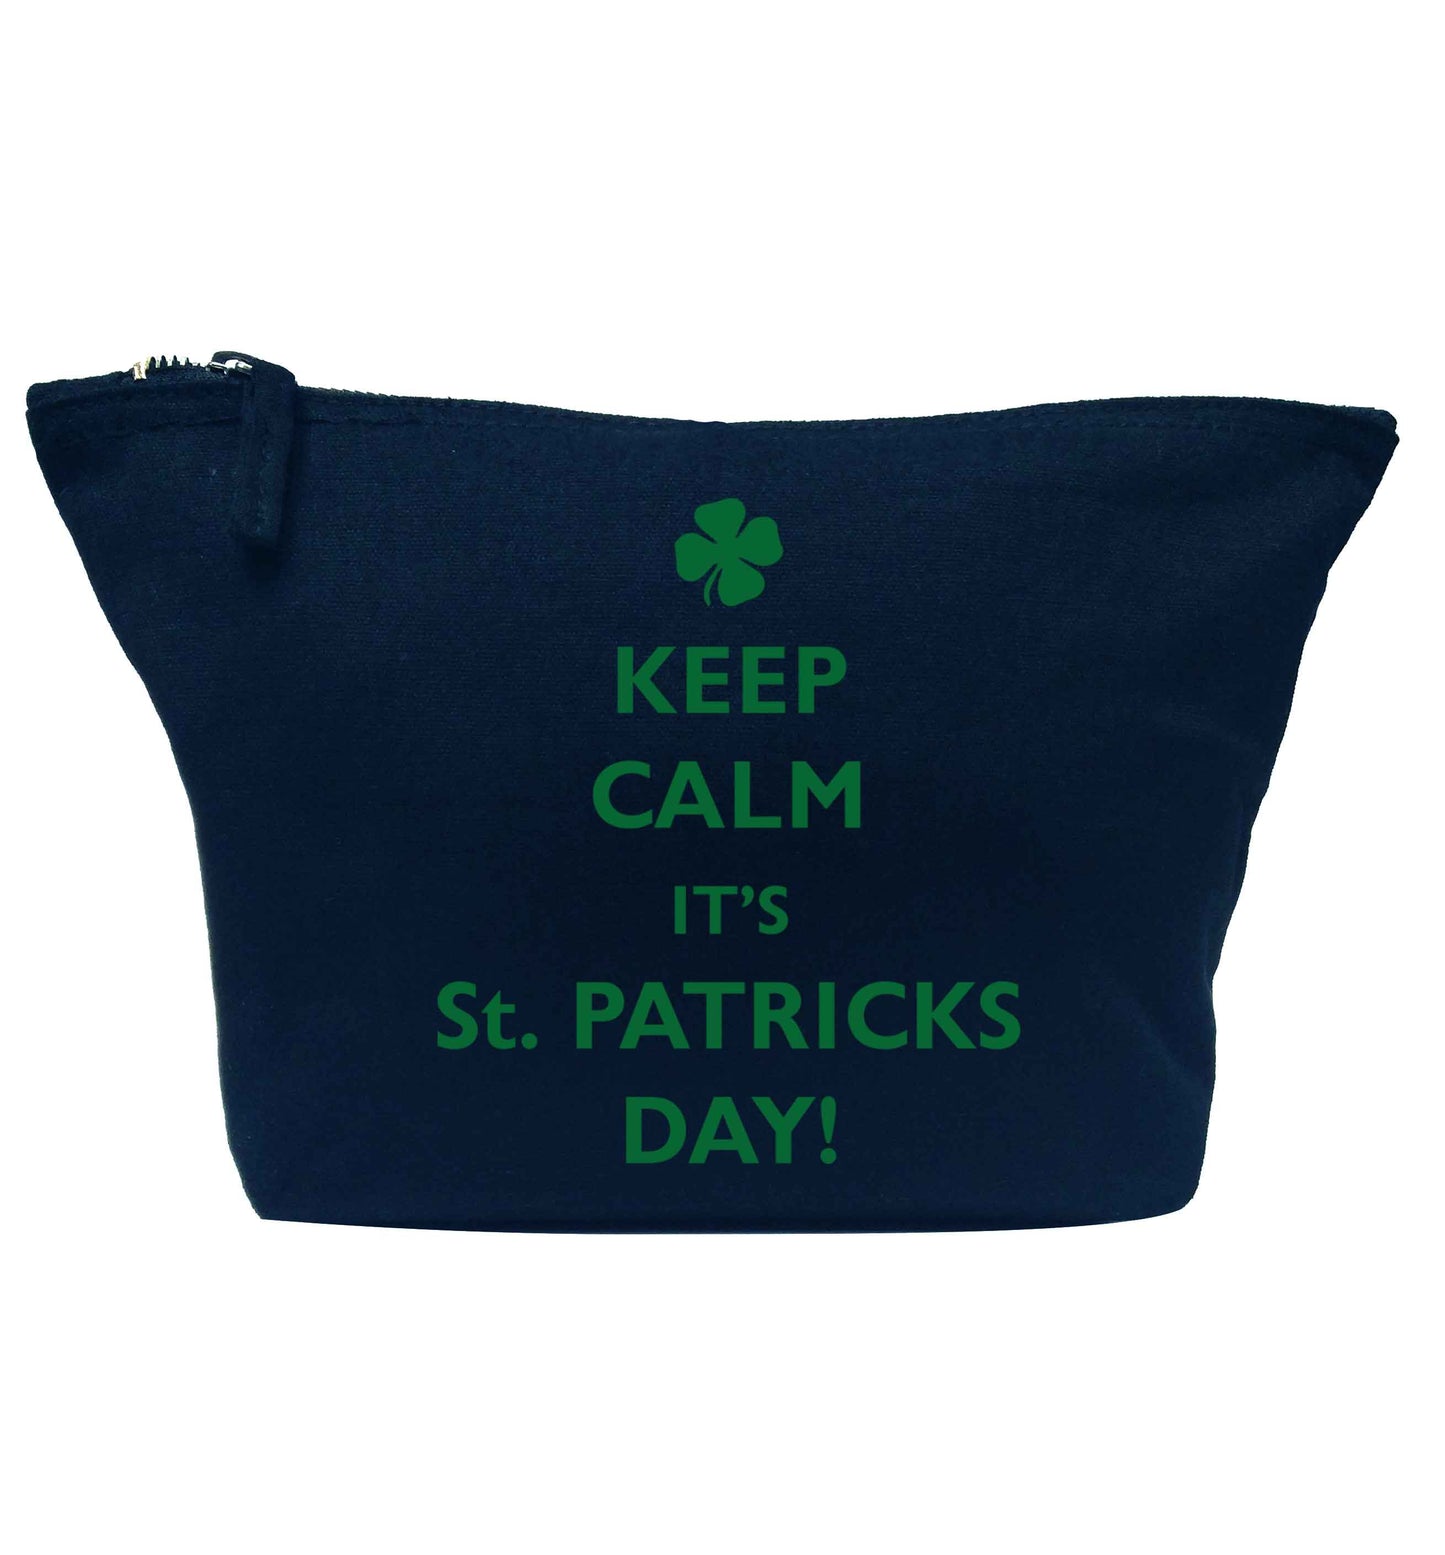 Keep calm it's St.Patricks day navy makeup bag